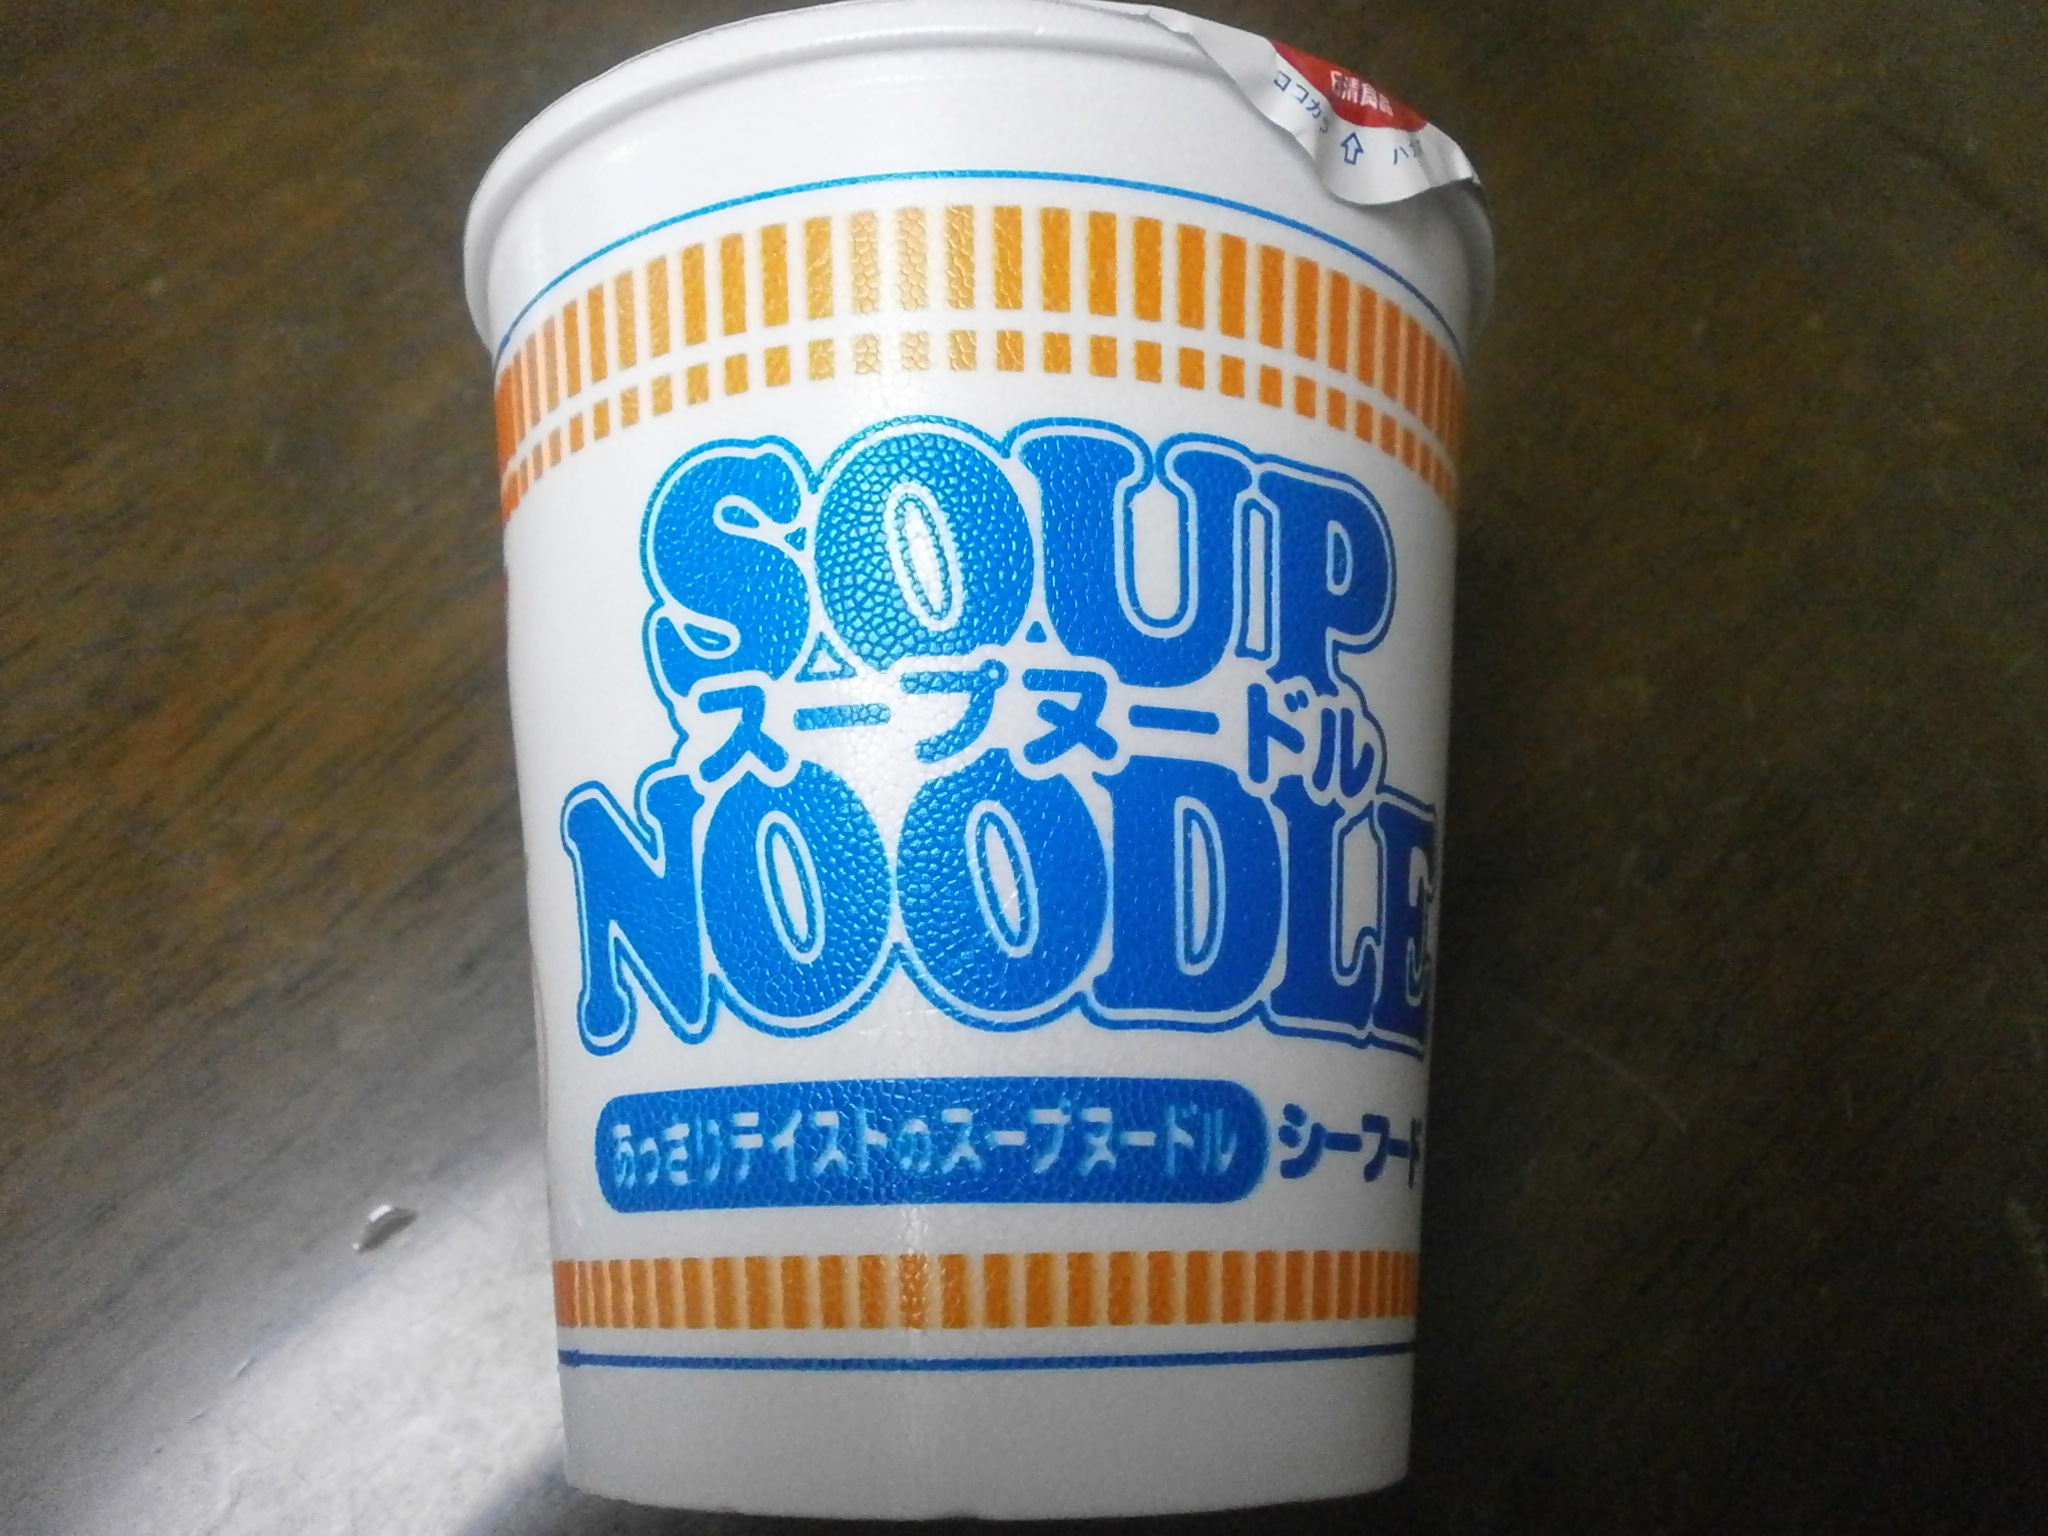 Que altas calorias? Noodle Soup (Curry)? Sopa de macarrão (marisco)?